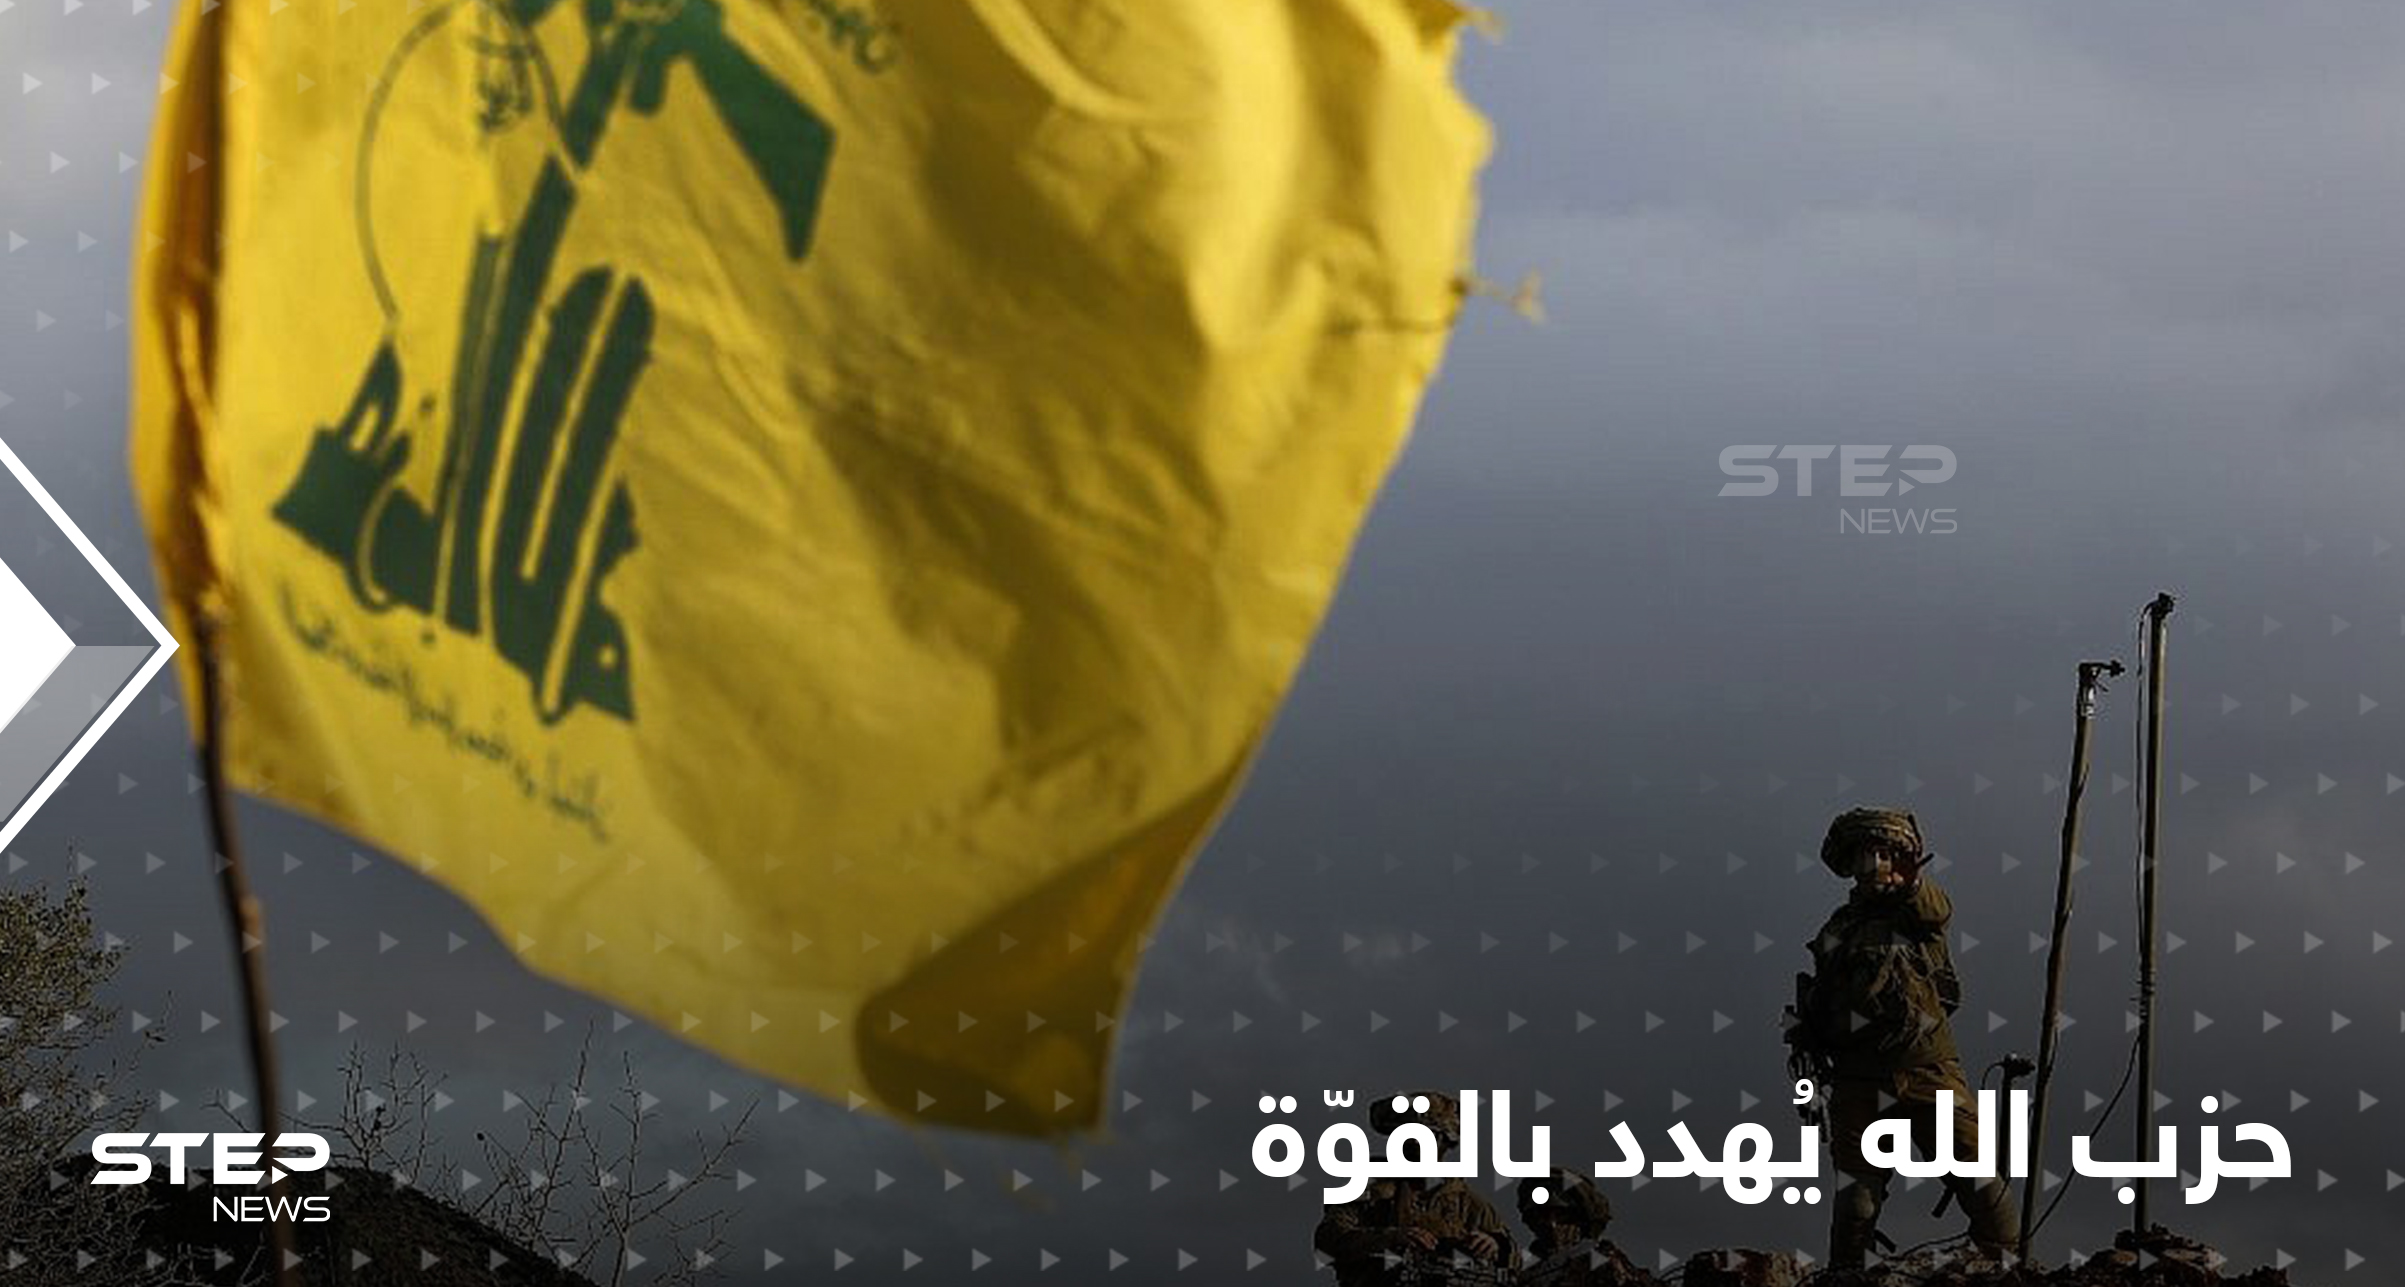 حزب الله يُهدد بردع التنقيب الإسرائيلي بالقوة